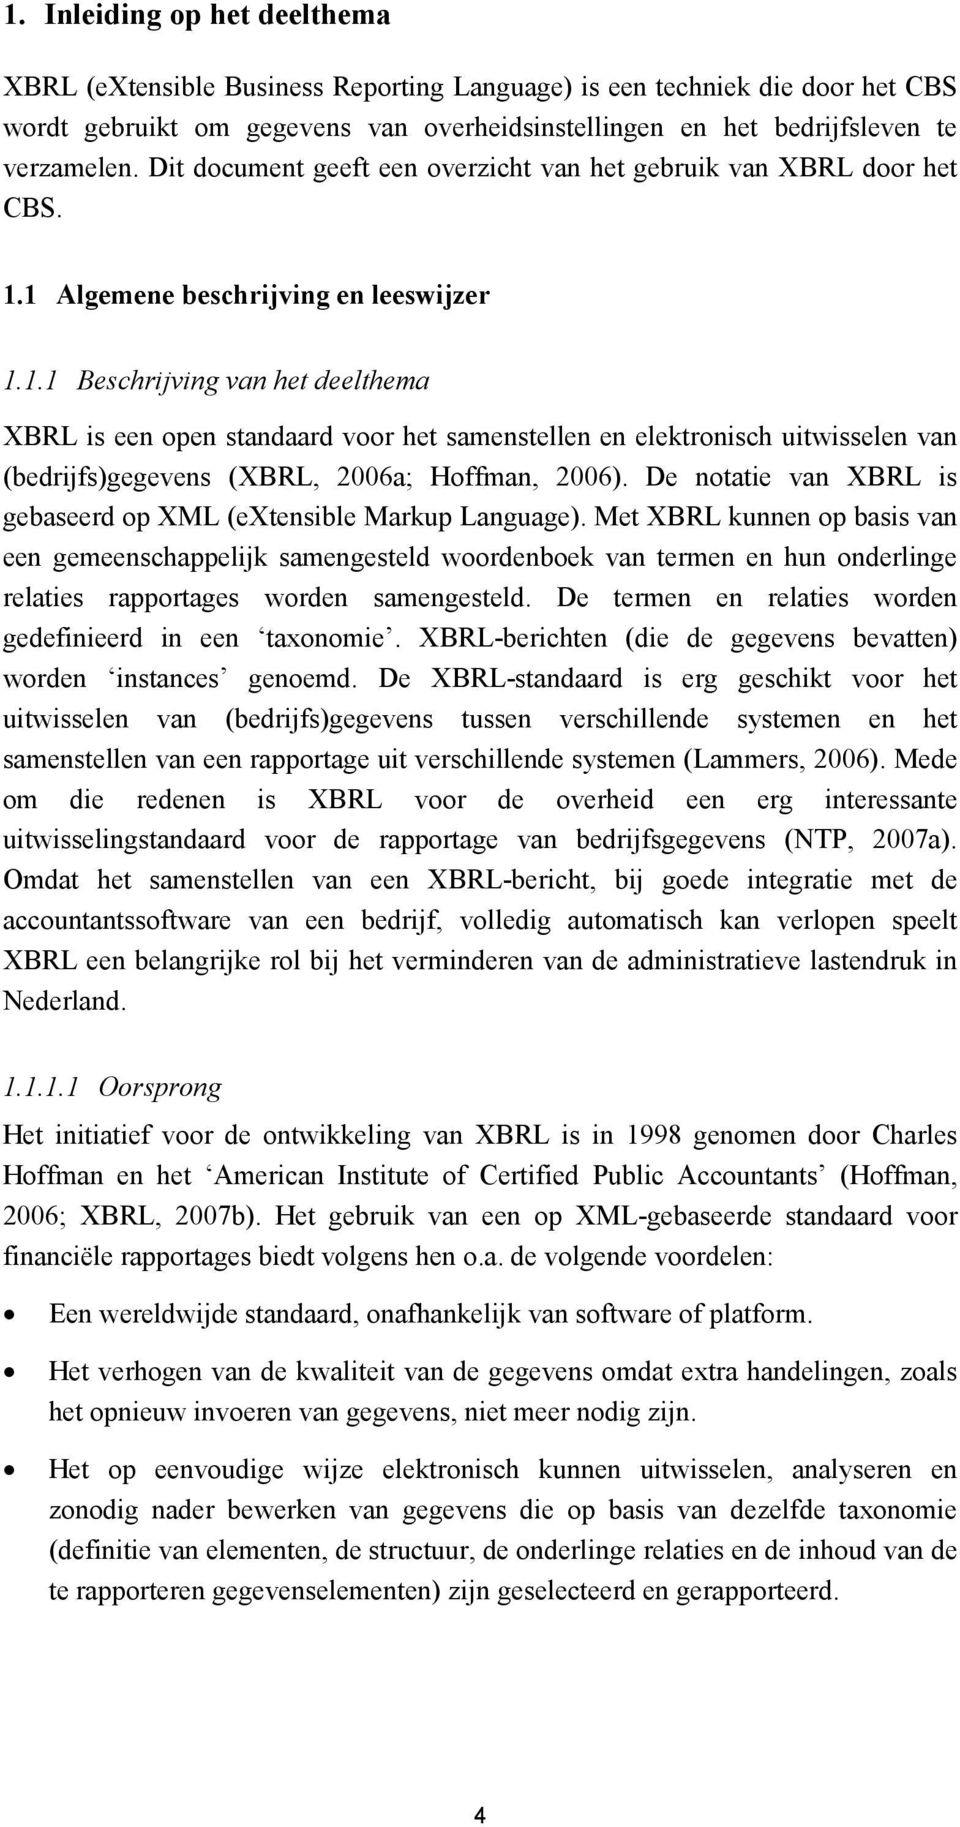 1 Algemene beschrijving en leeswijzer 1.1.1 Beschrijving van het deelthema XBRL is een open standaard voor het samenstellen en elektronisch uitwisselen van (bedrijfs)gegevens (XBRL, 2006a; Hoffman, 2006).